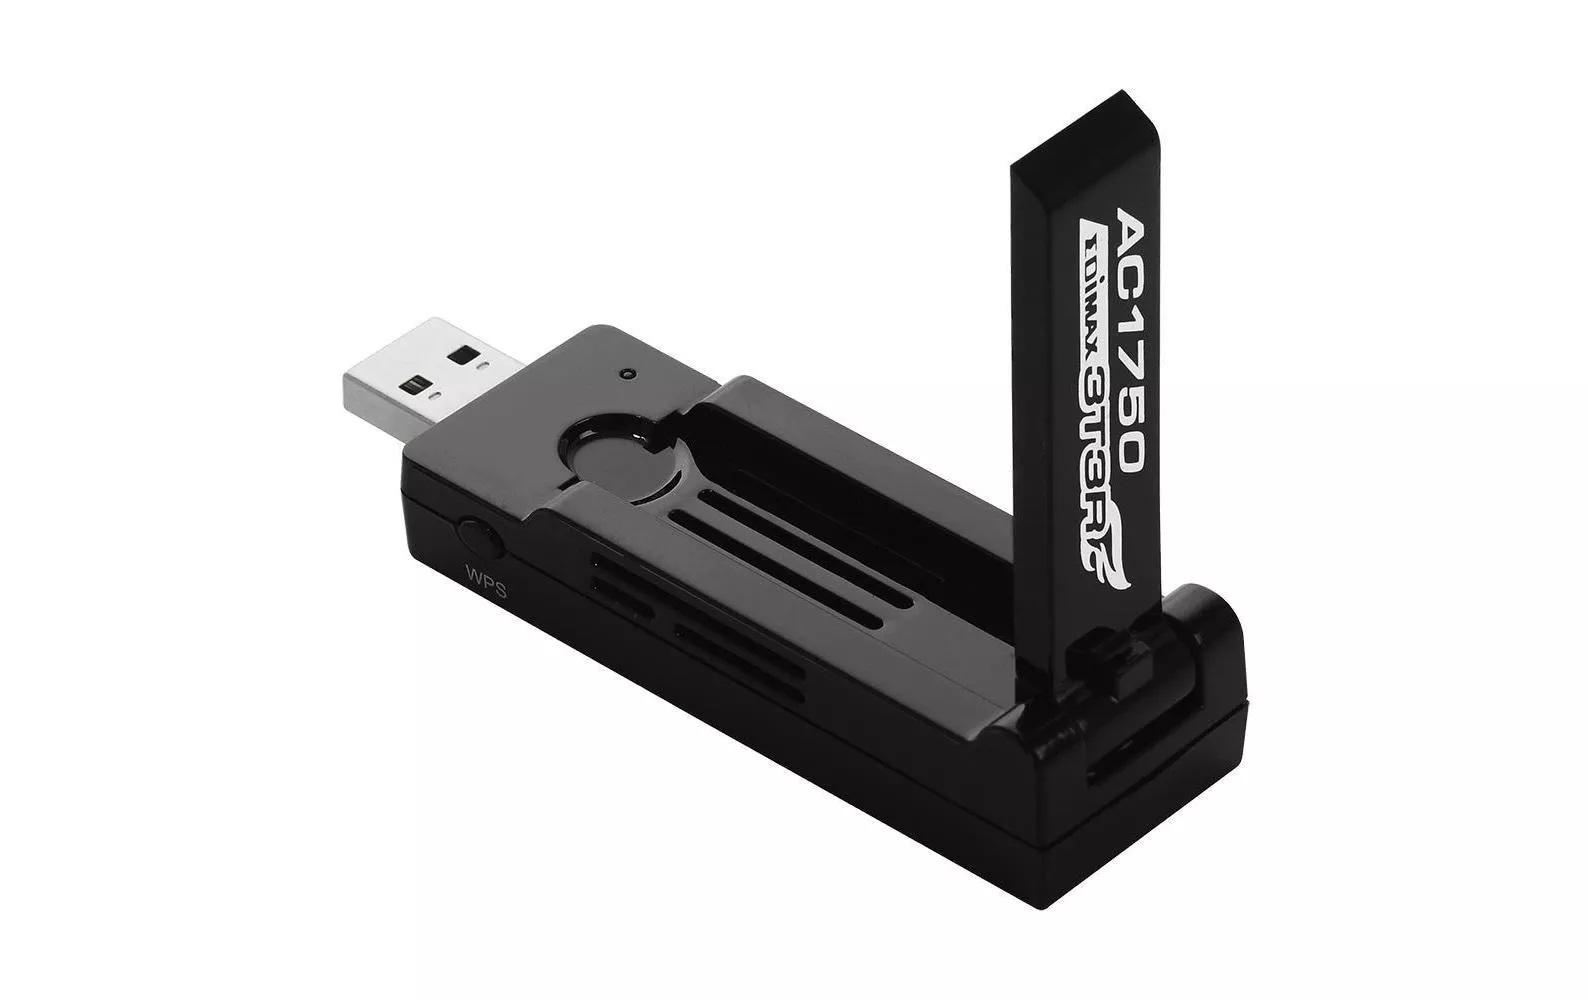 WLAN-AC chiavetta USB EW-7833UAC